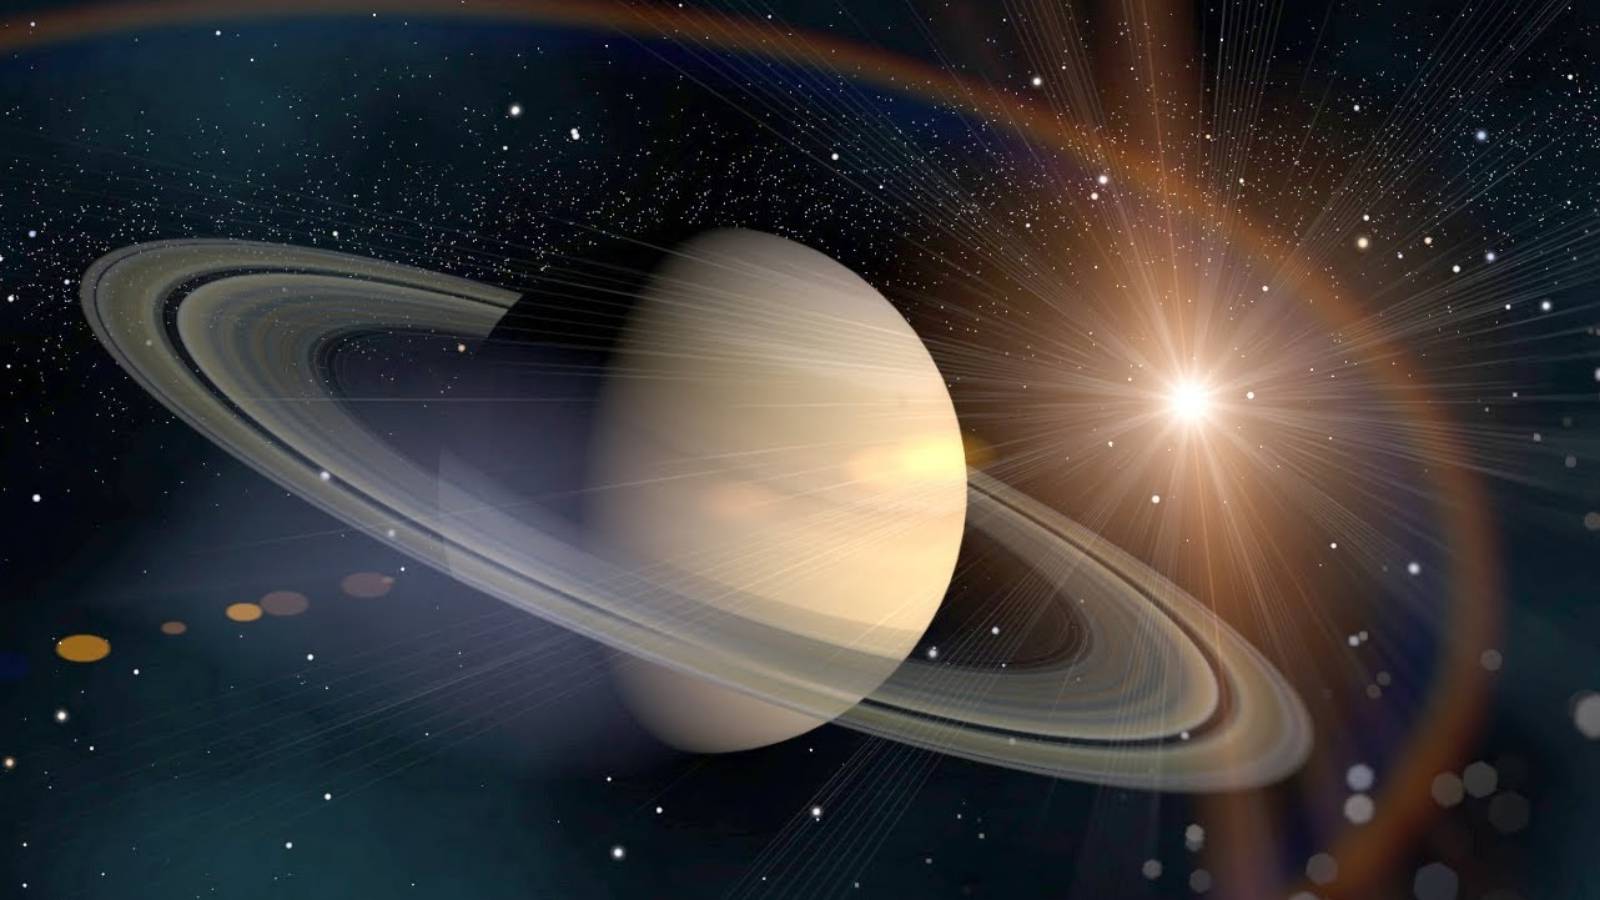 De libelplaneet van Saturnus